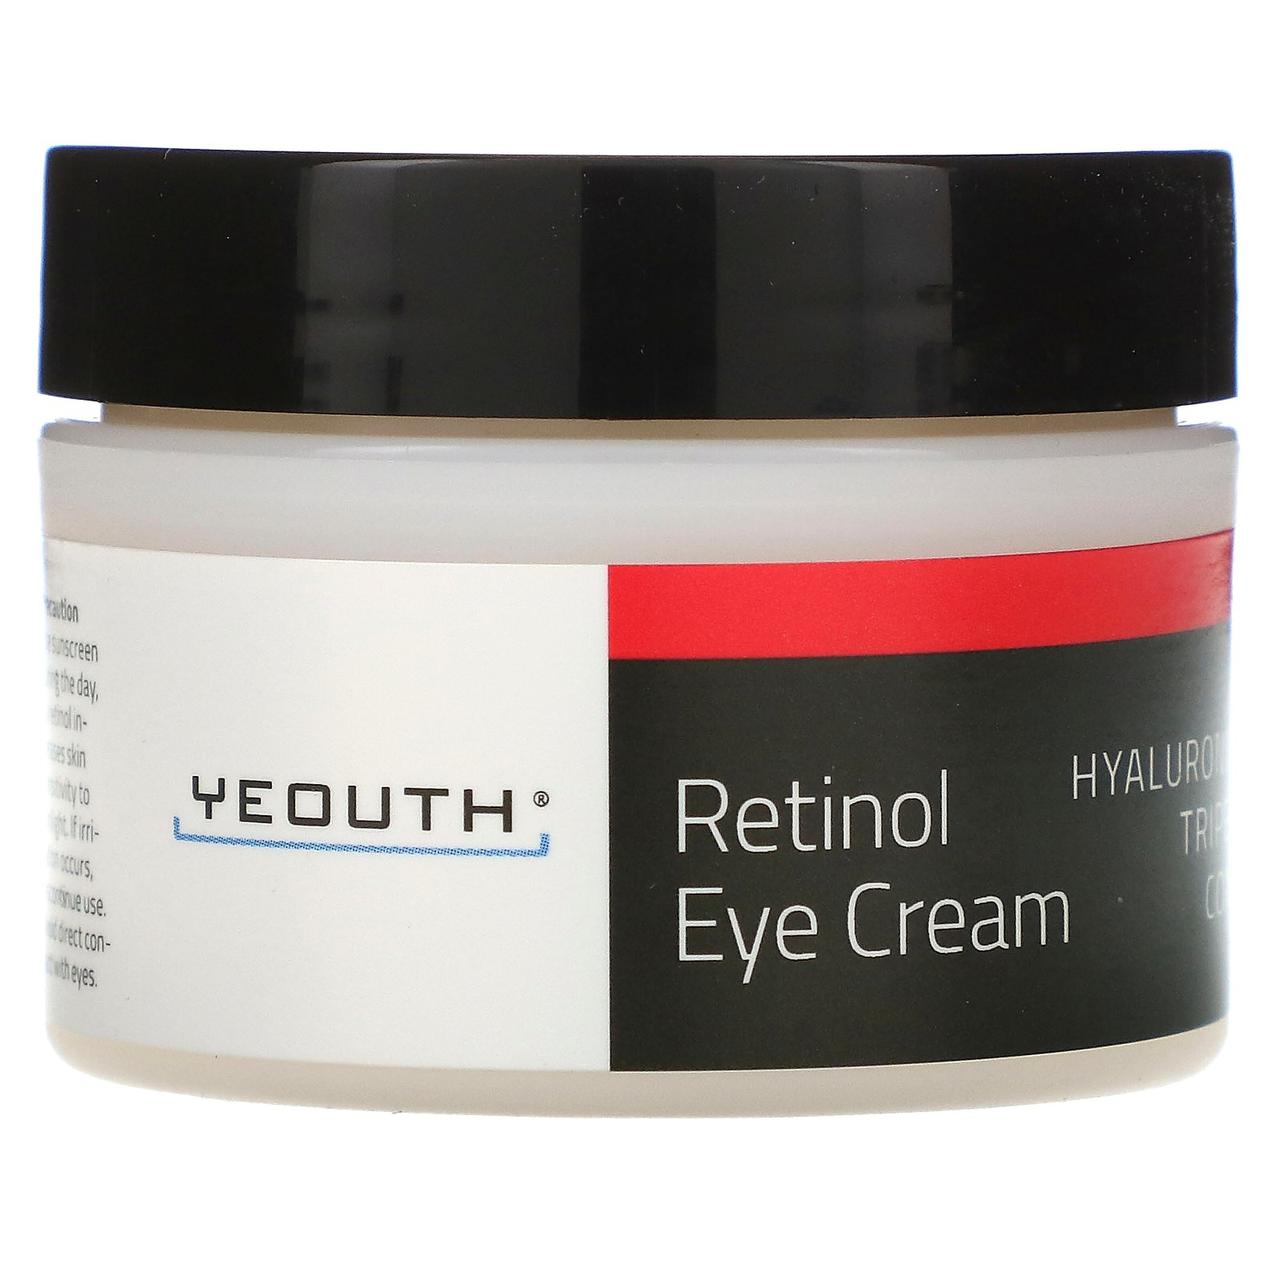 Yeouth, Retinol 2.5% Eye Cream, 1 fl oz (30 ml), фото 1